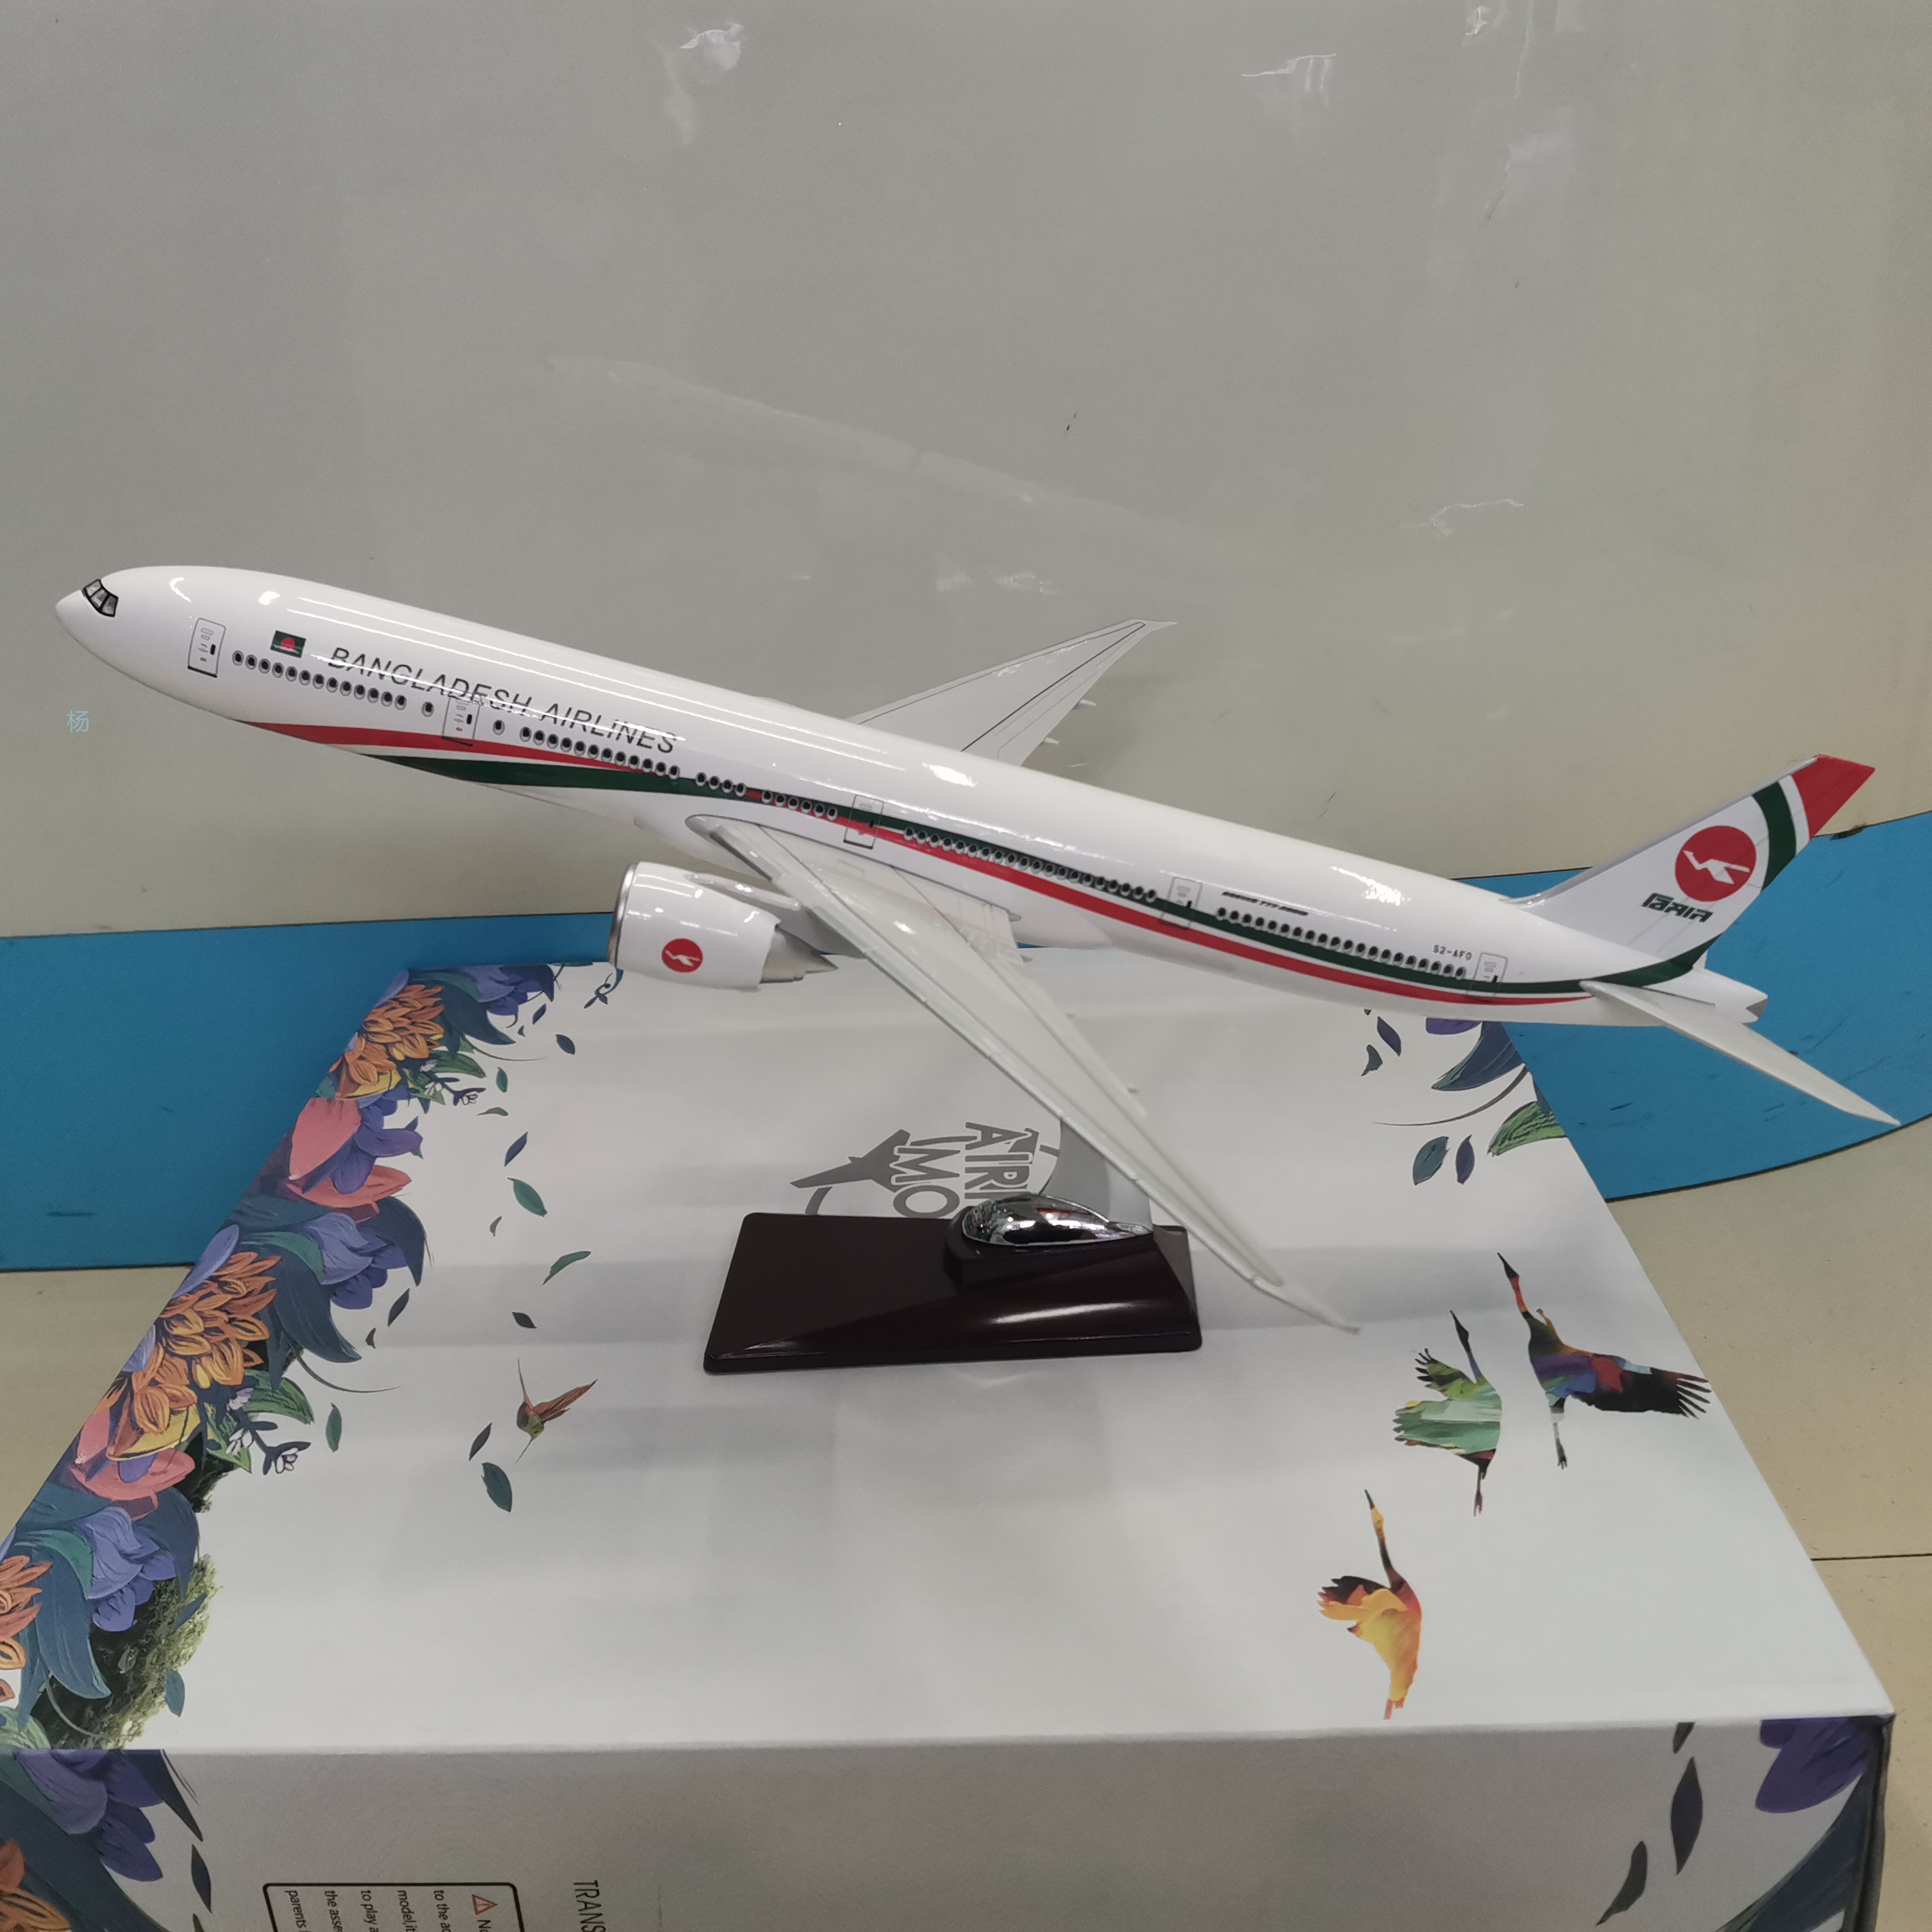 飞机模型（孟加拉航空B777-300ER飞机）仿真飞机模型 ABS合成强化树脂飞机模型图